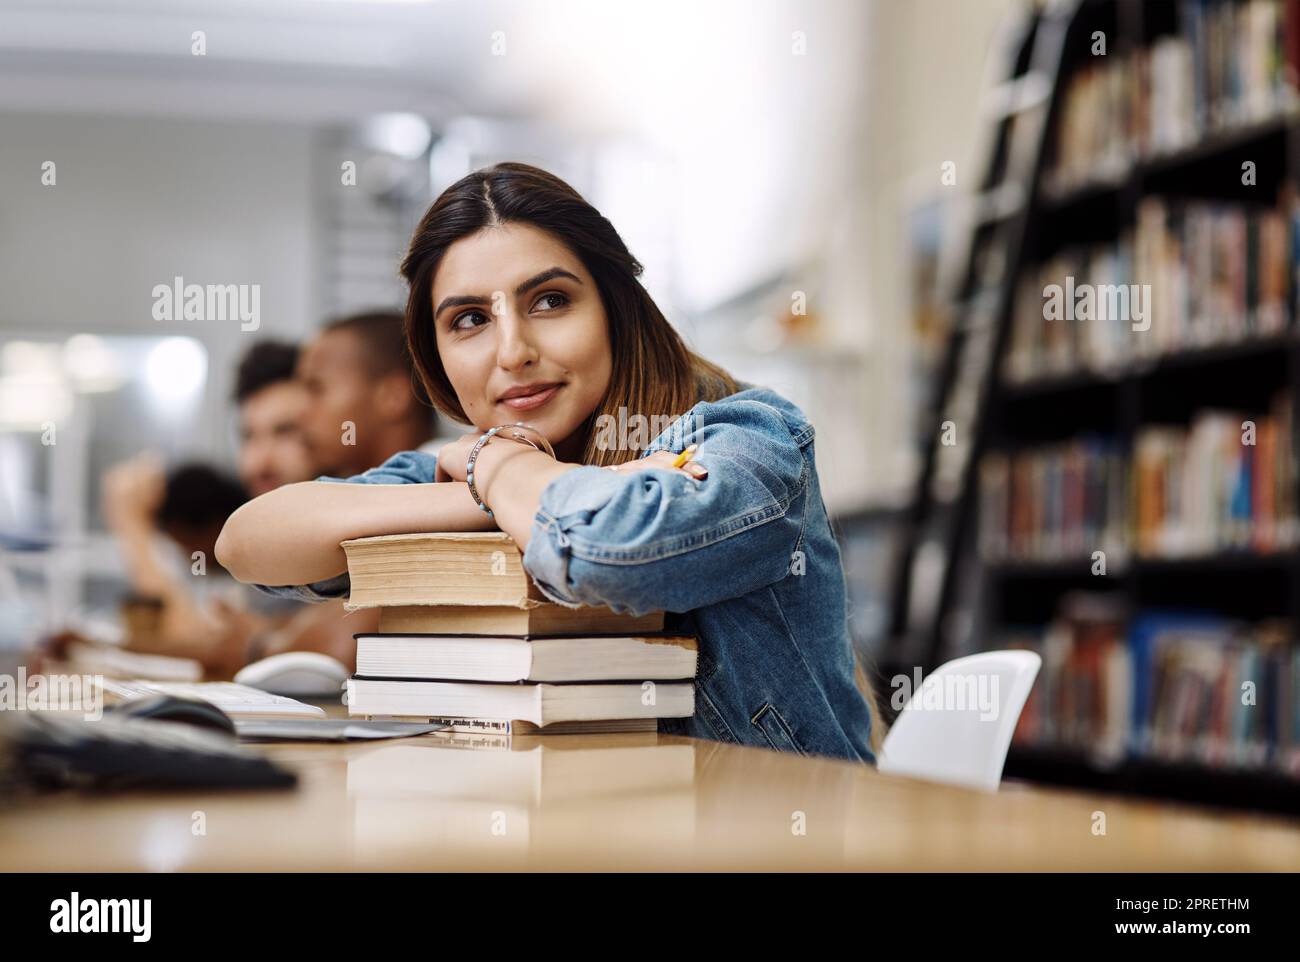 Shes hat die ganze Welt im Visier. Eine junge Frau, die sich in einer Universitätsbibliothek auf einem Bücherhaufen ausruhte und nachdenklich aussutete. Stockfoto